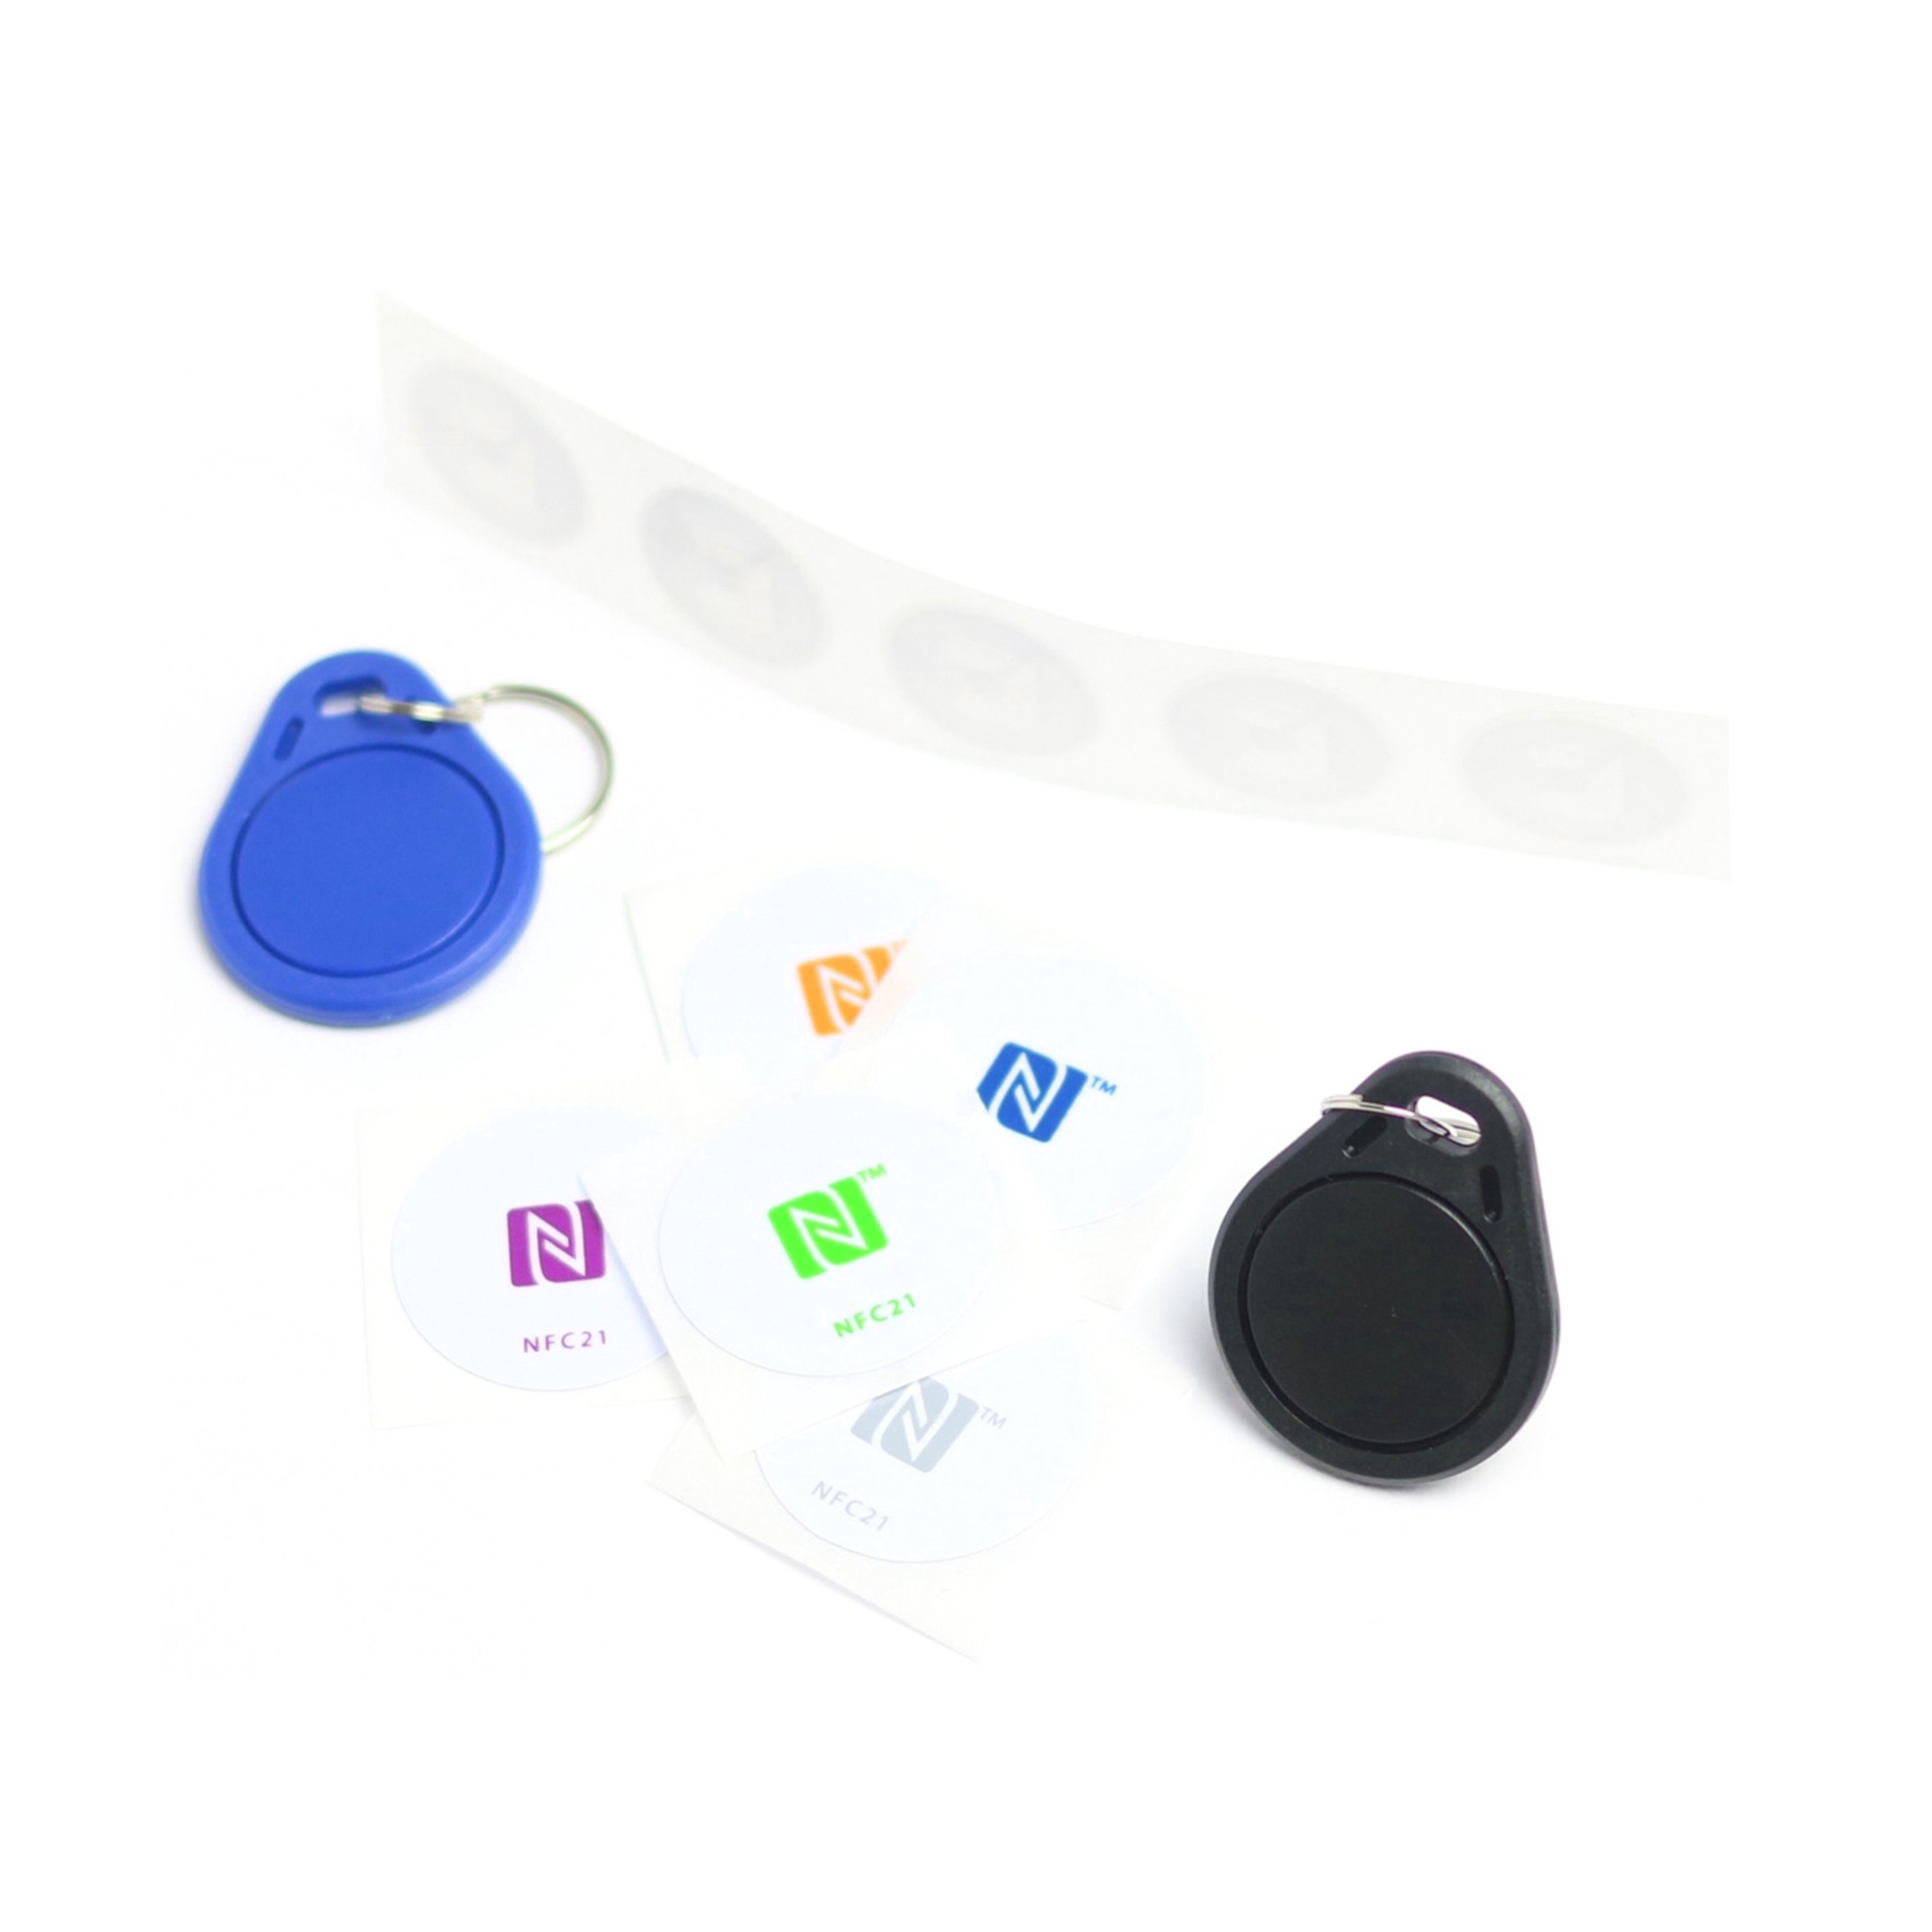 NFC Starter Kit mit 5 weißen PET Stickern, 5 weißen PET Stickern mit buntem NFC Logo und zwei ABS Schlüsselanhängern in blau und schwarz